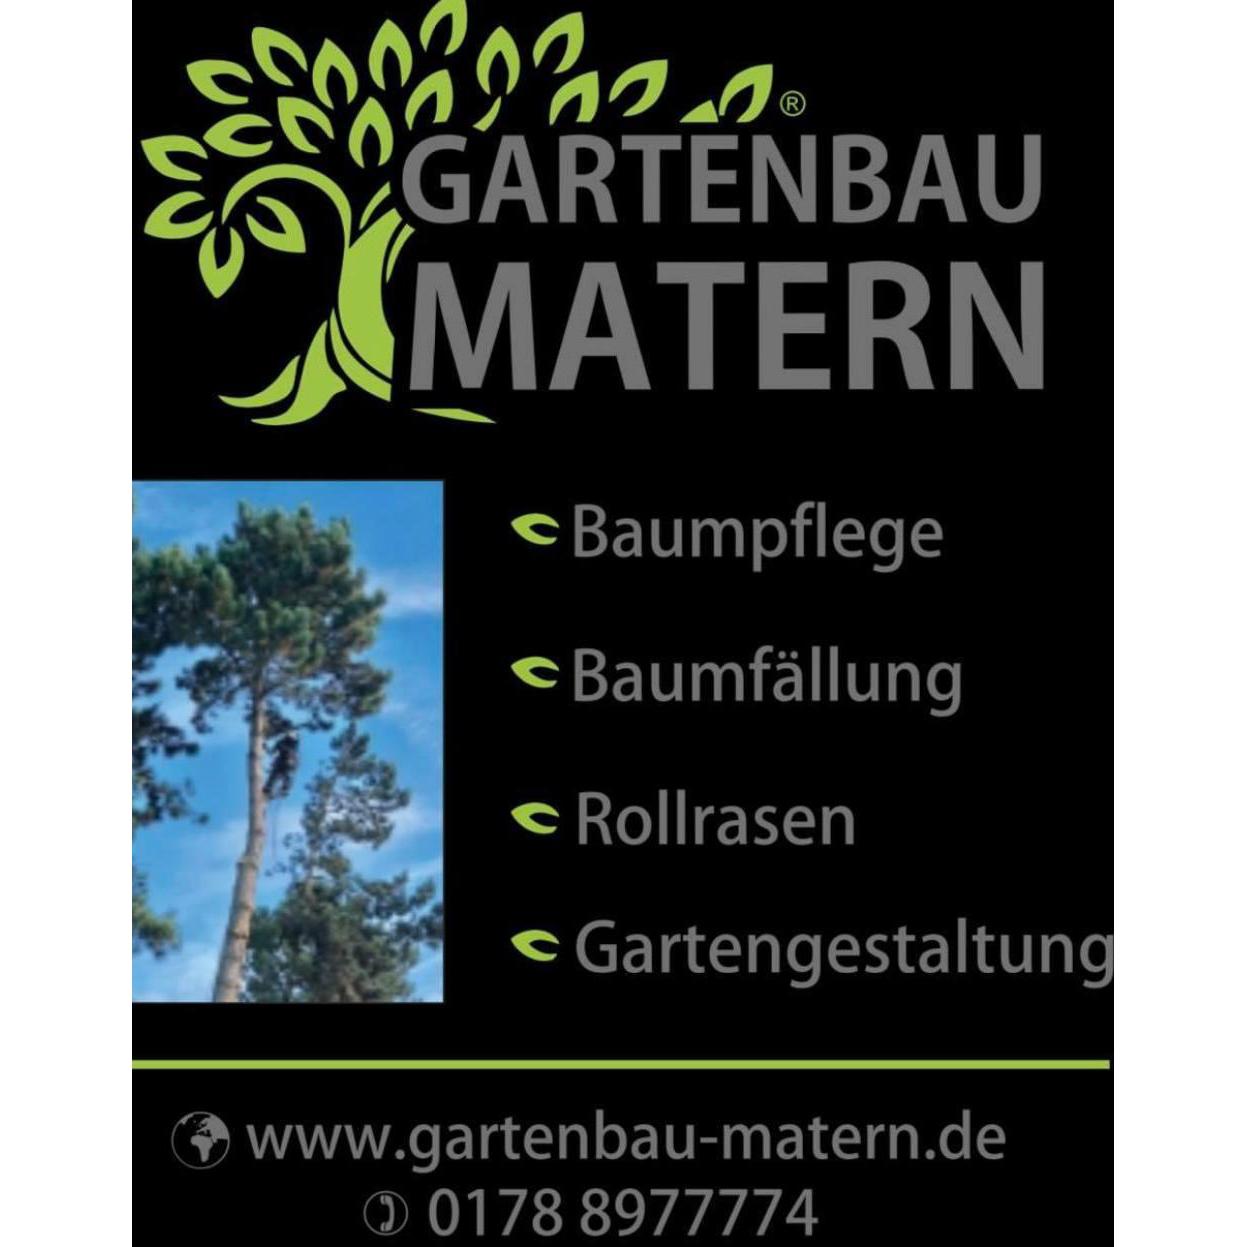 Baumdienst Baumfällung Gartengestaltung-Gartenservice-Baumpflege in Hackenheim - Logo